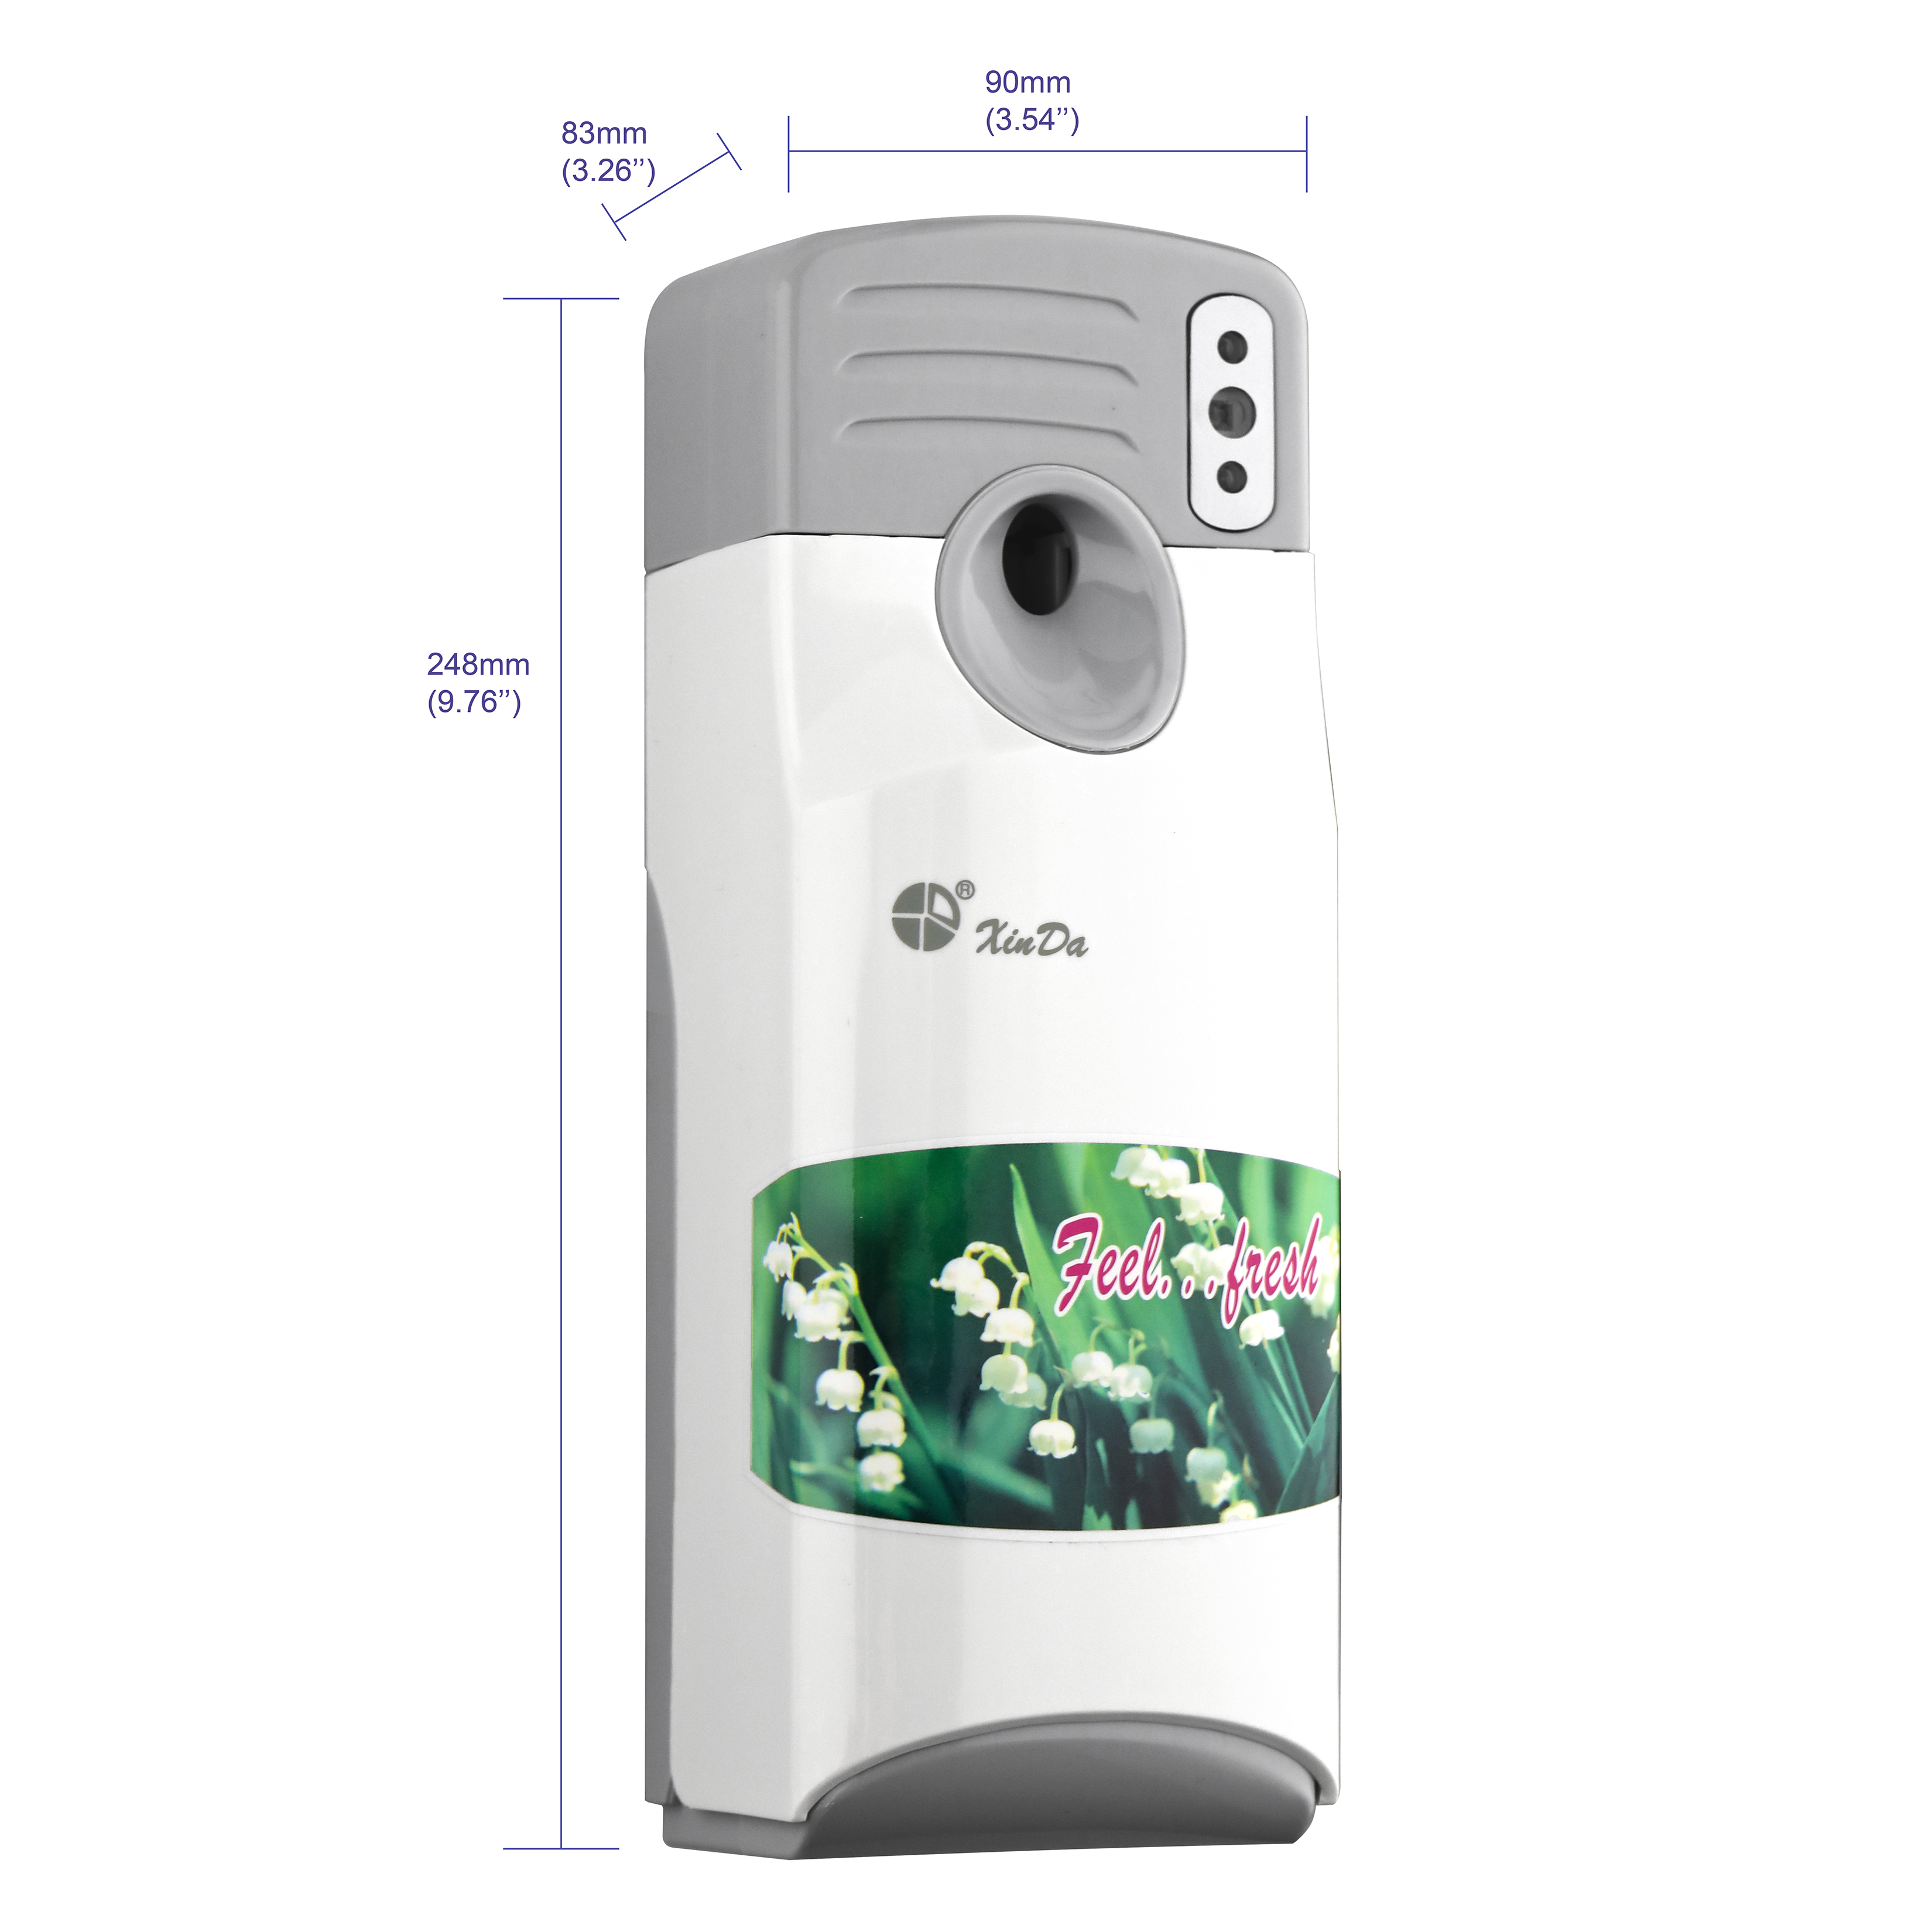 XINDA PXQ288A Remote Auto Perfume Dispenser